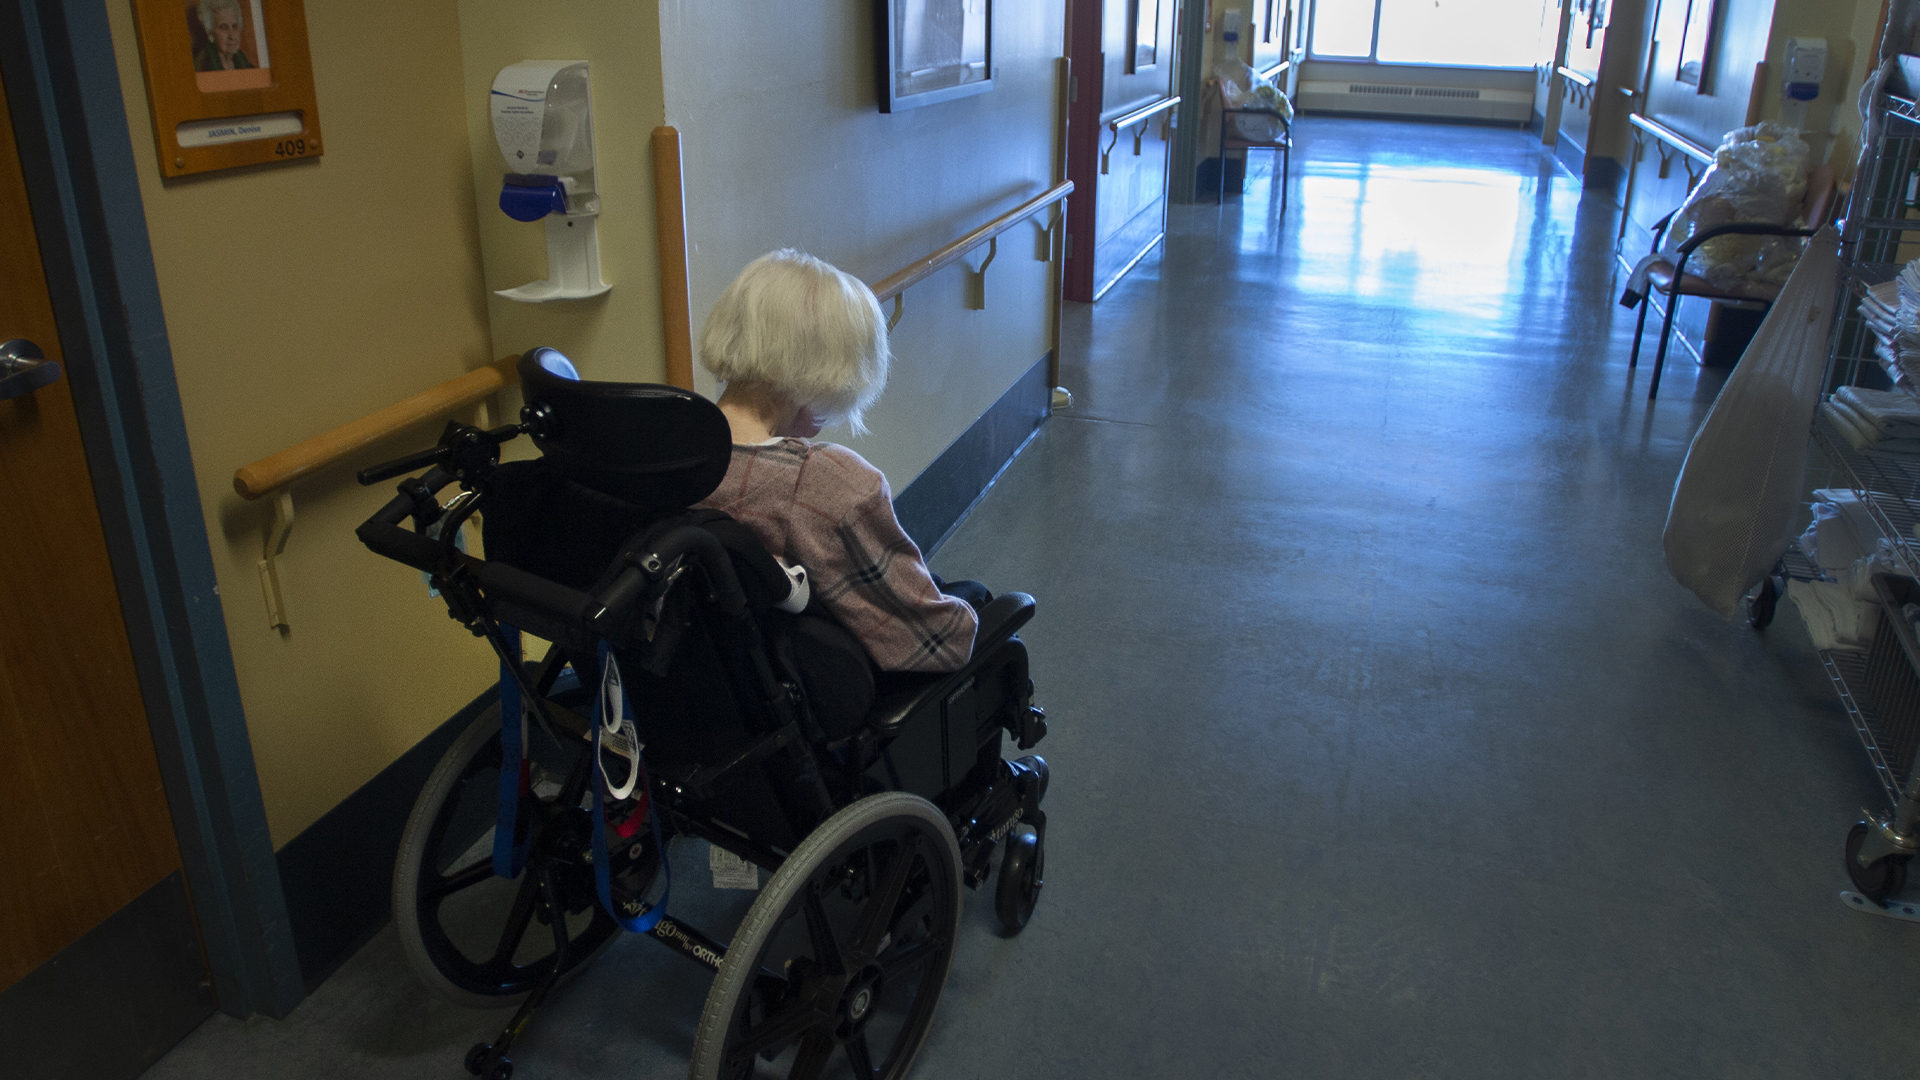 Dans un contexte de vieillissement accéléré de la population au Québec, le Ministère de la Santé et des Services sociaux (MSSS) n’est toujours pas en mesure de répondre entièrement aux besoins de tous les aînés en perte d’autonomie, selon la Vérificatrice générale.